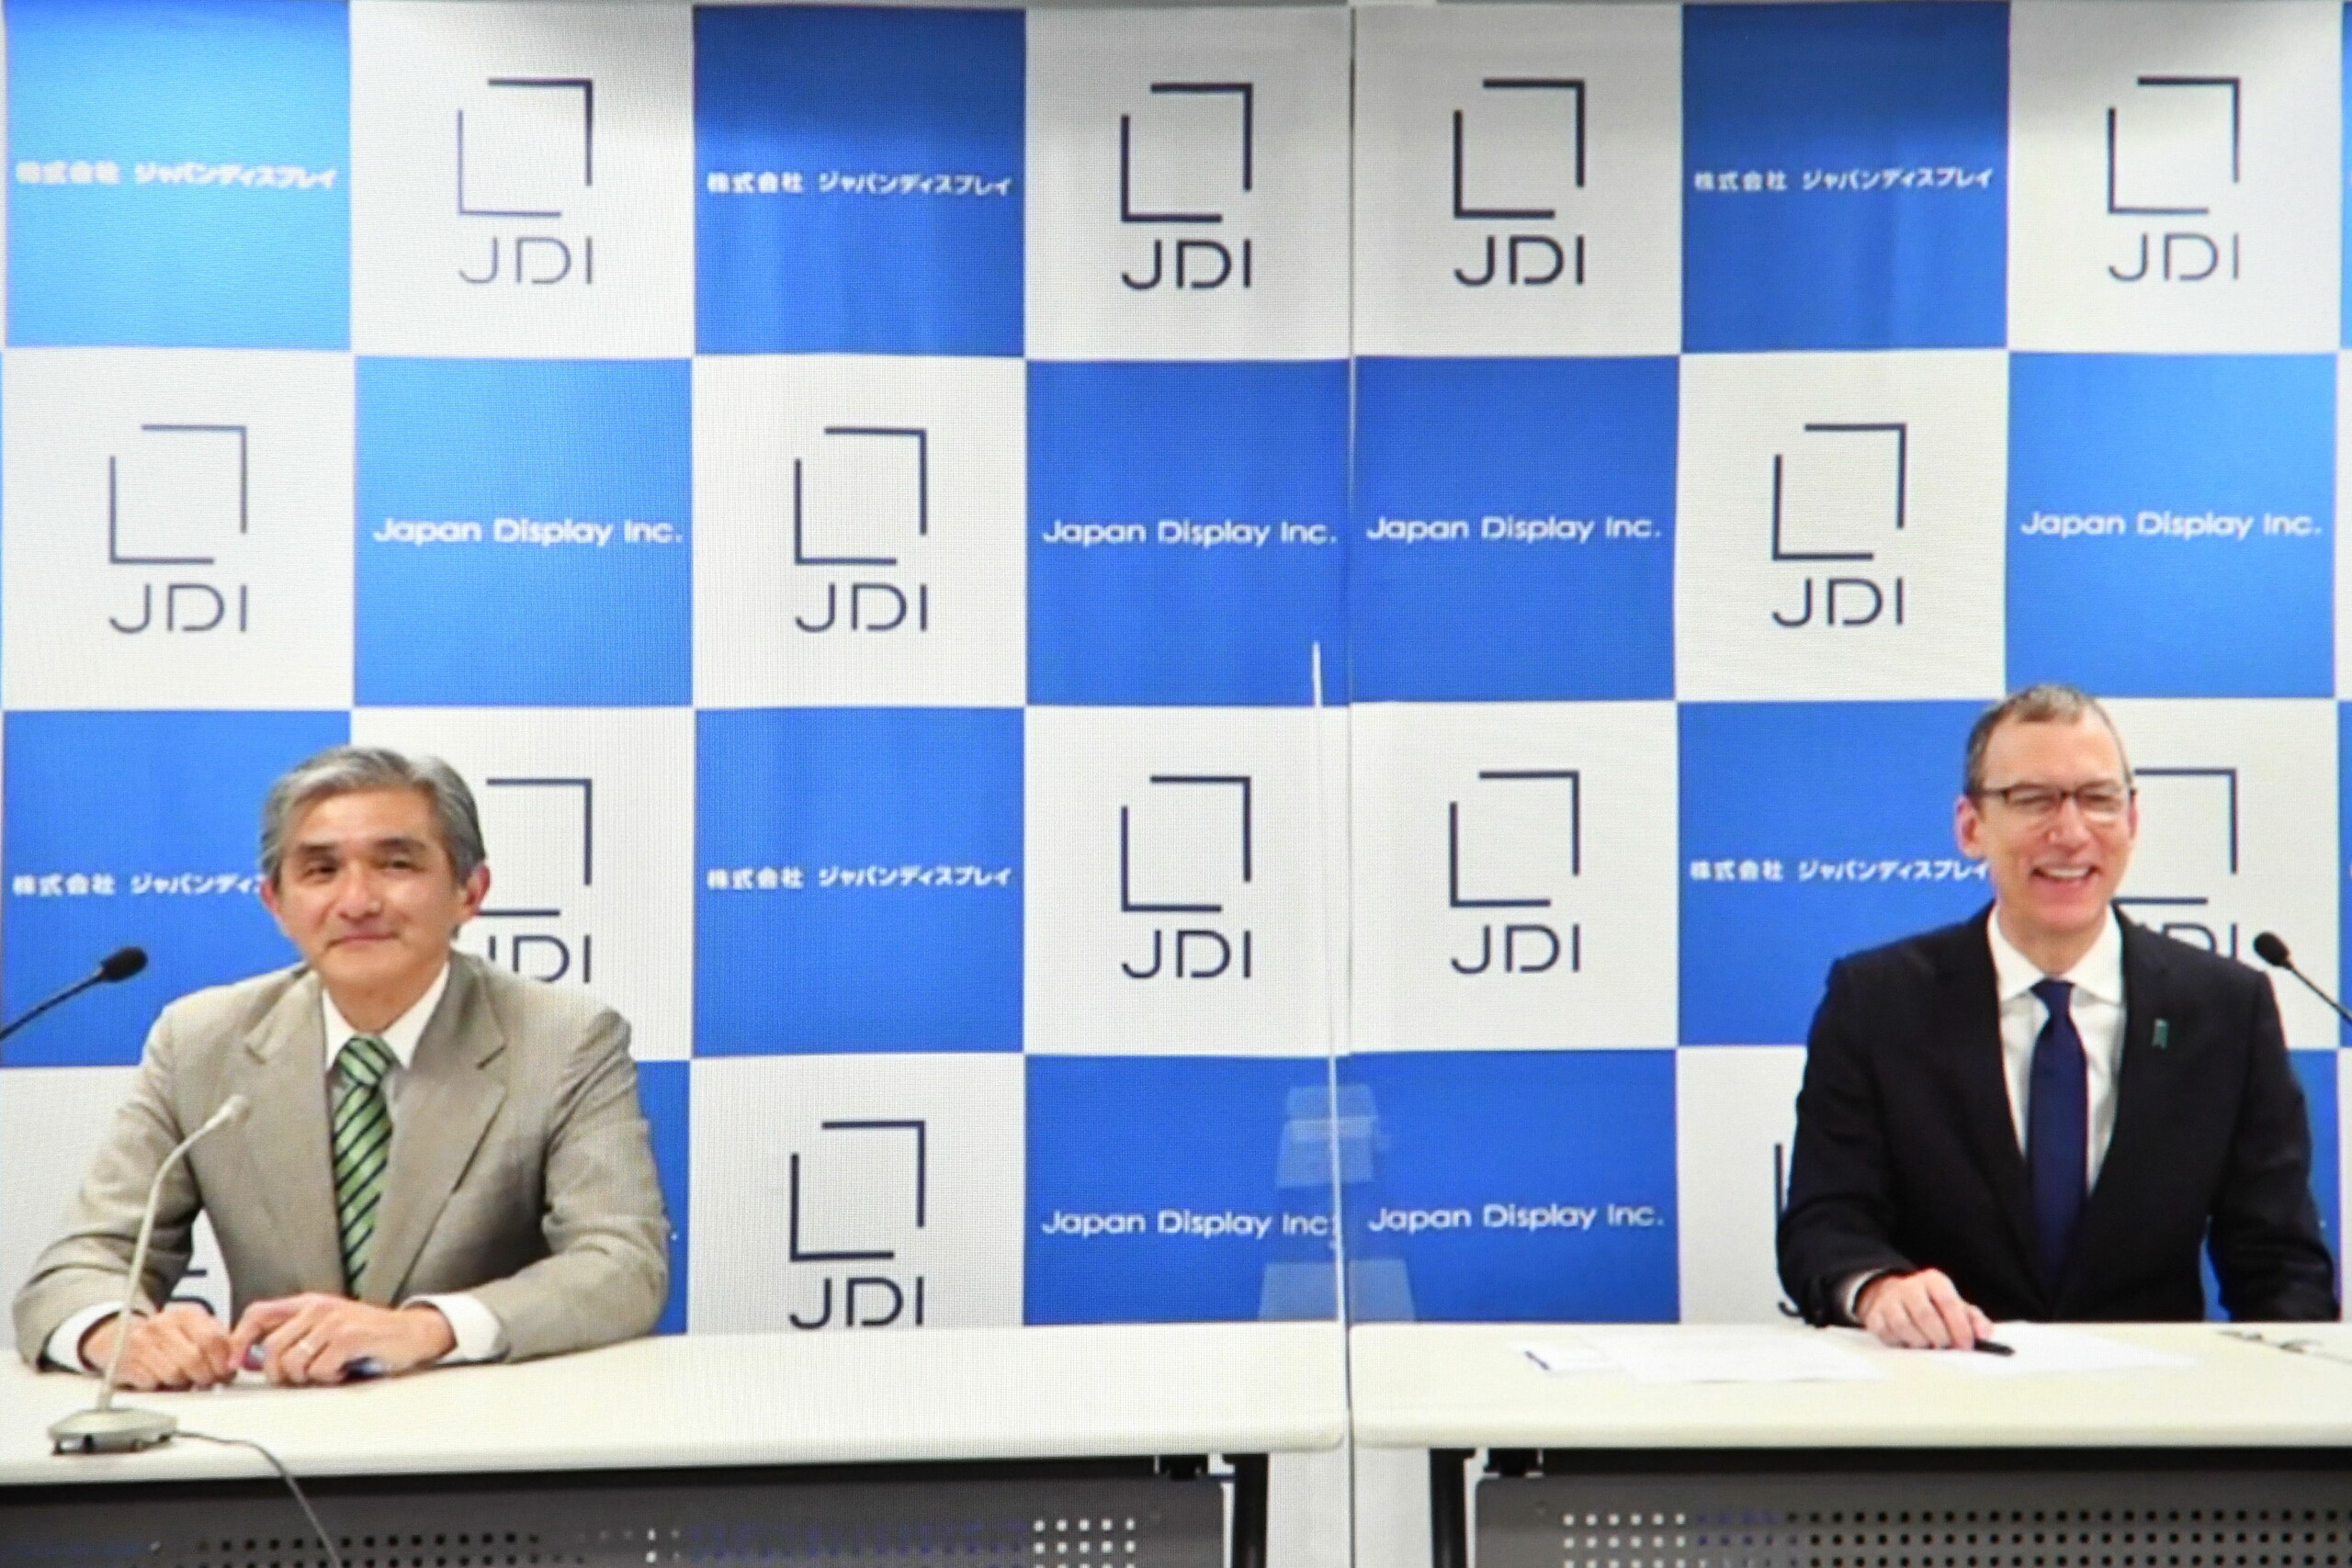 ジャパンディスプレイ、菊岡社長が退任　キャロン会長に決定機能一元化